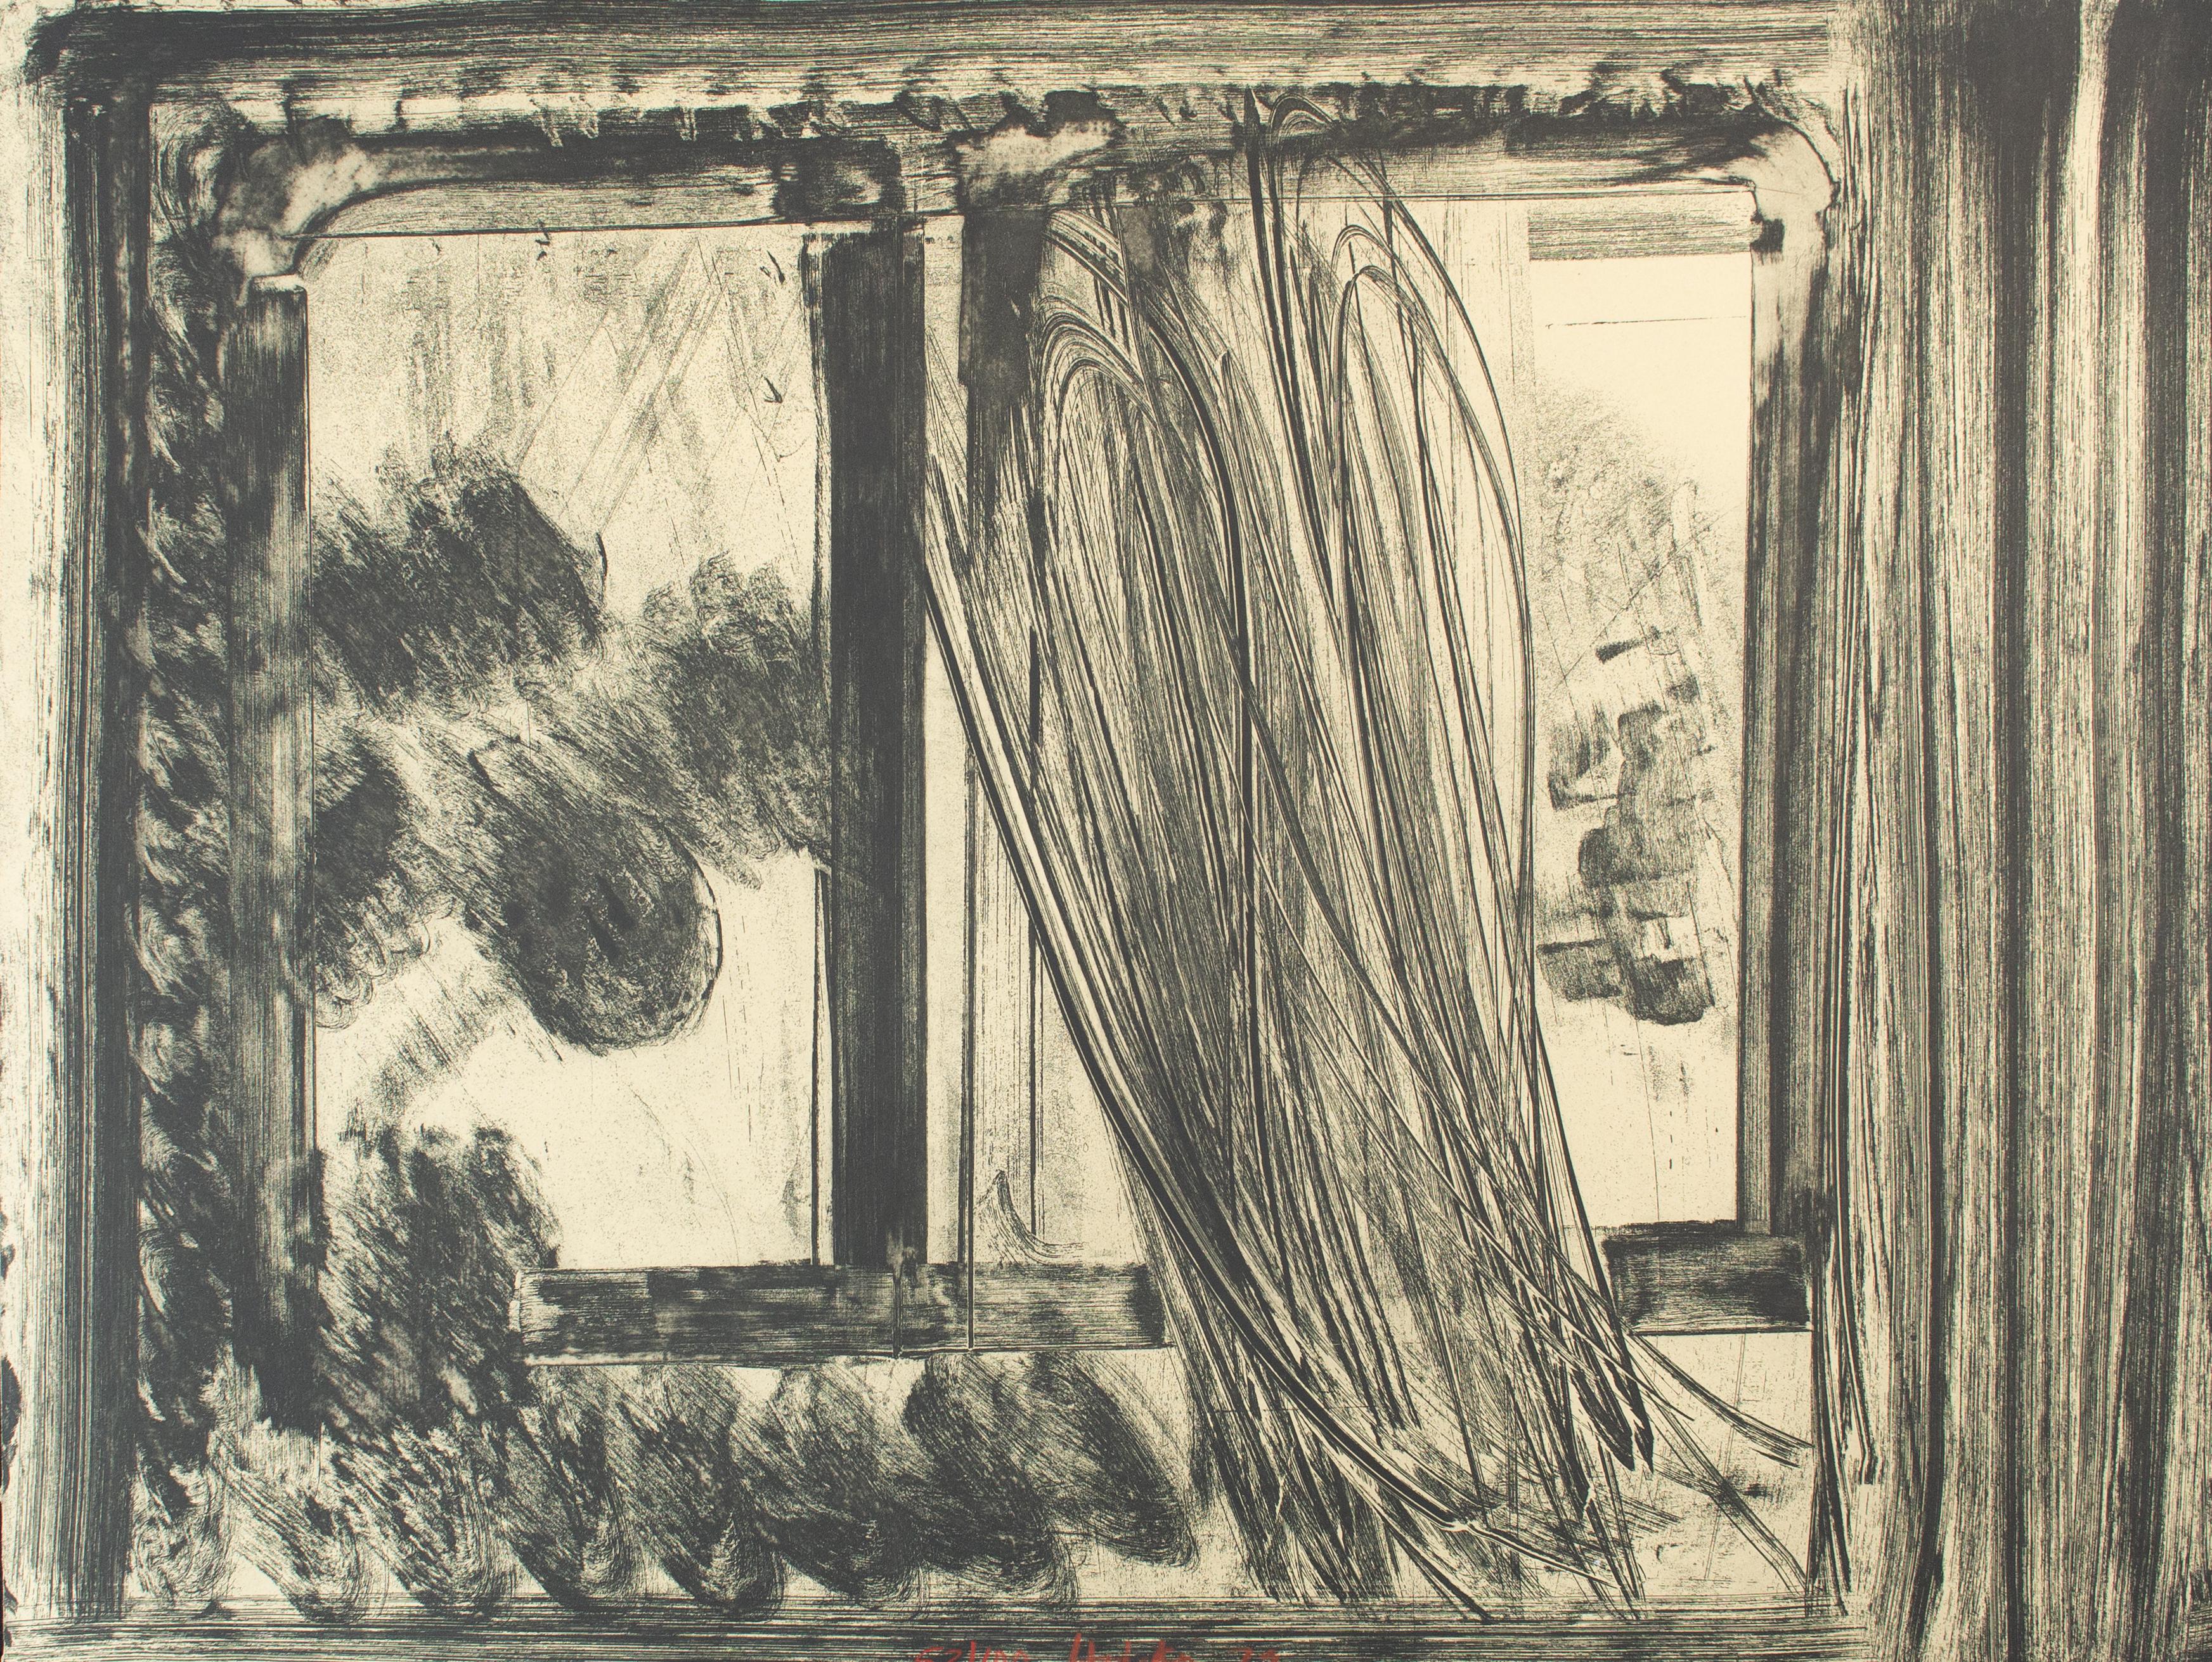 Howard Hodgkin Abstract Print – Später Nachmittag im Museum für Moderne Kunst, aus "Im Museum für Moderne Kunst".